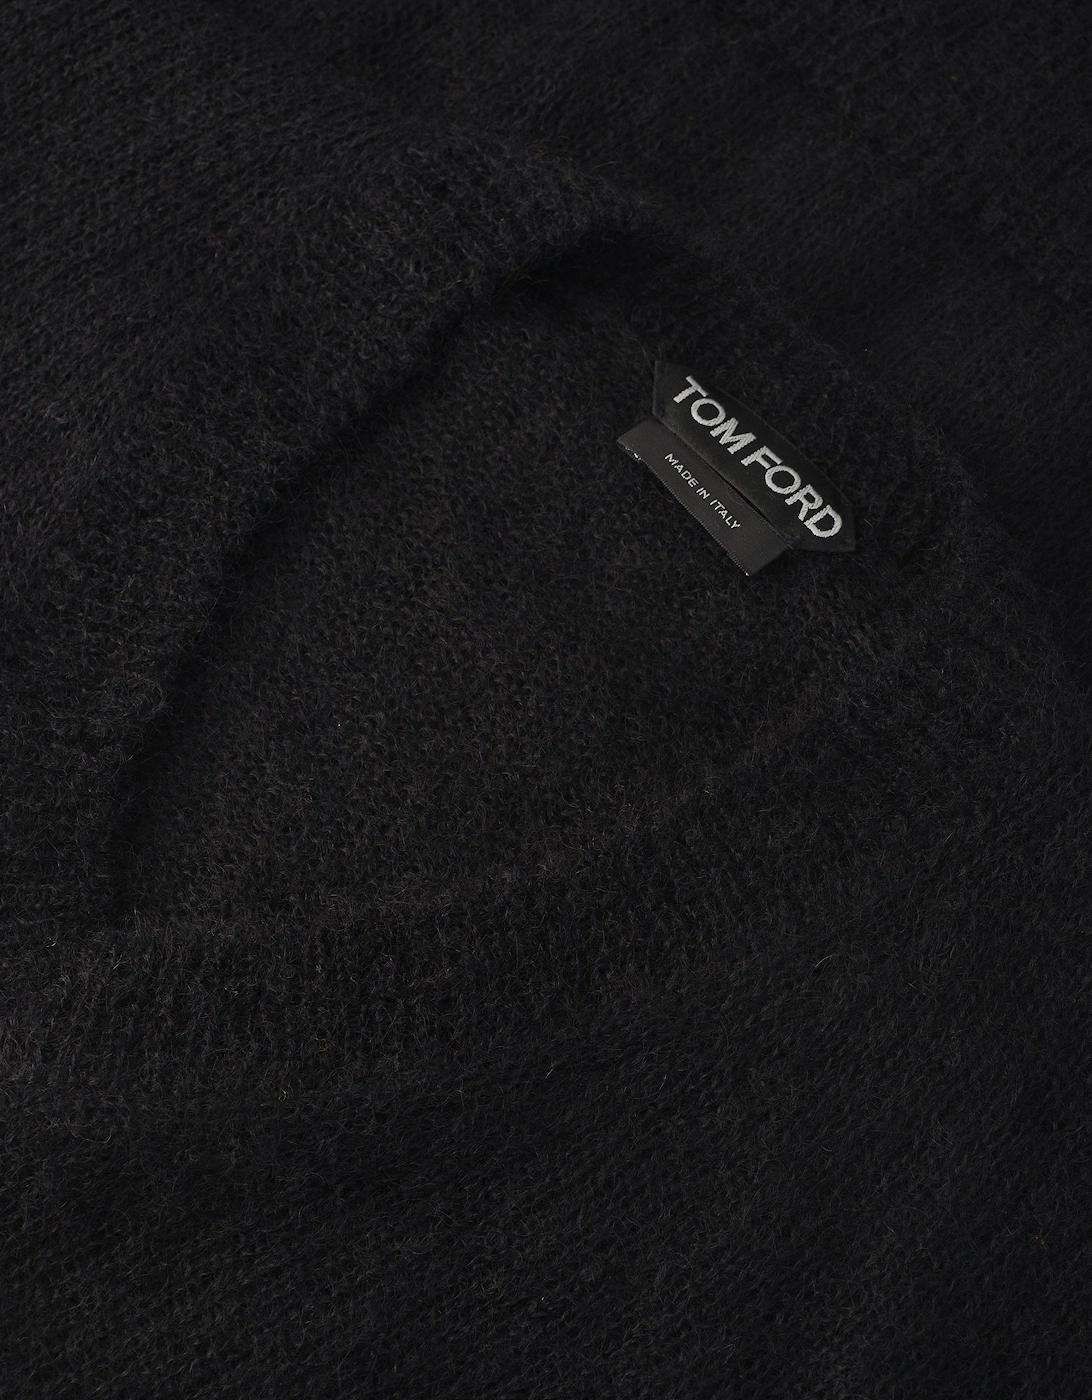 Mohair Blend V Neck Sweater Black